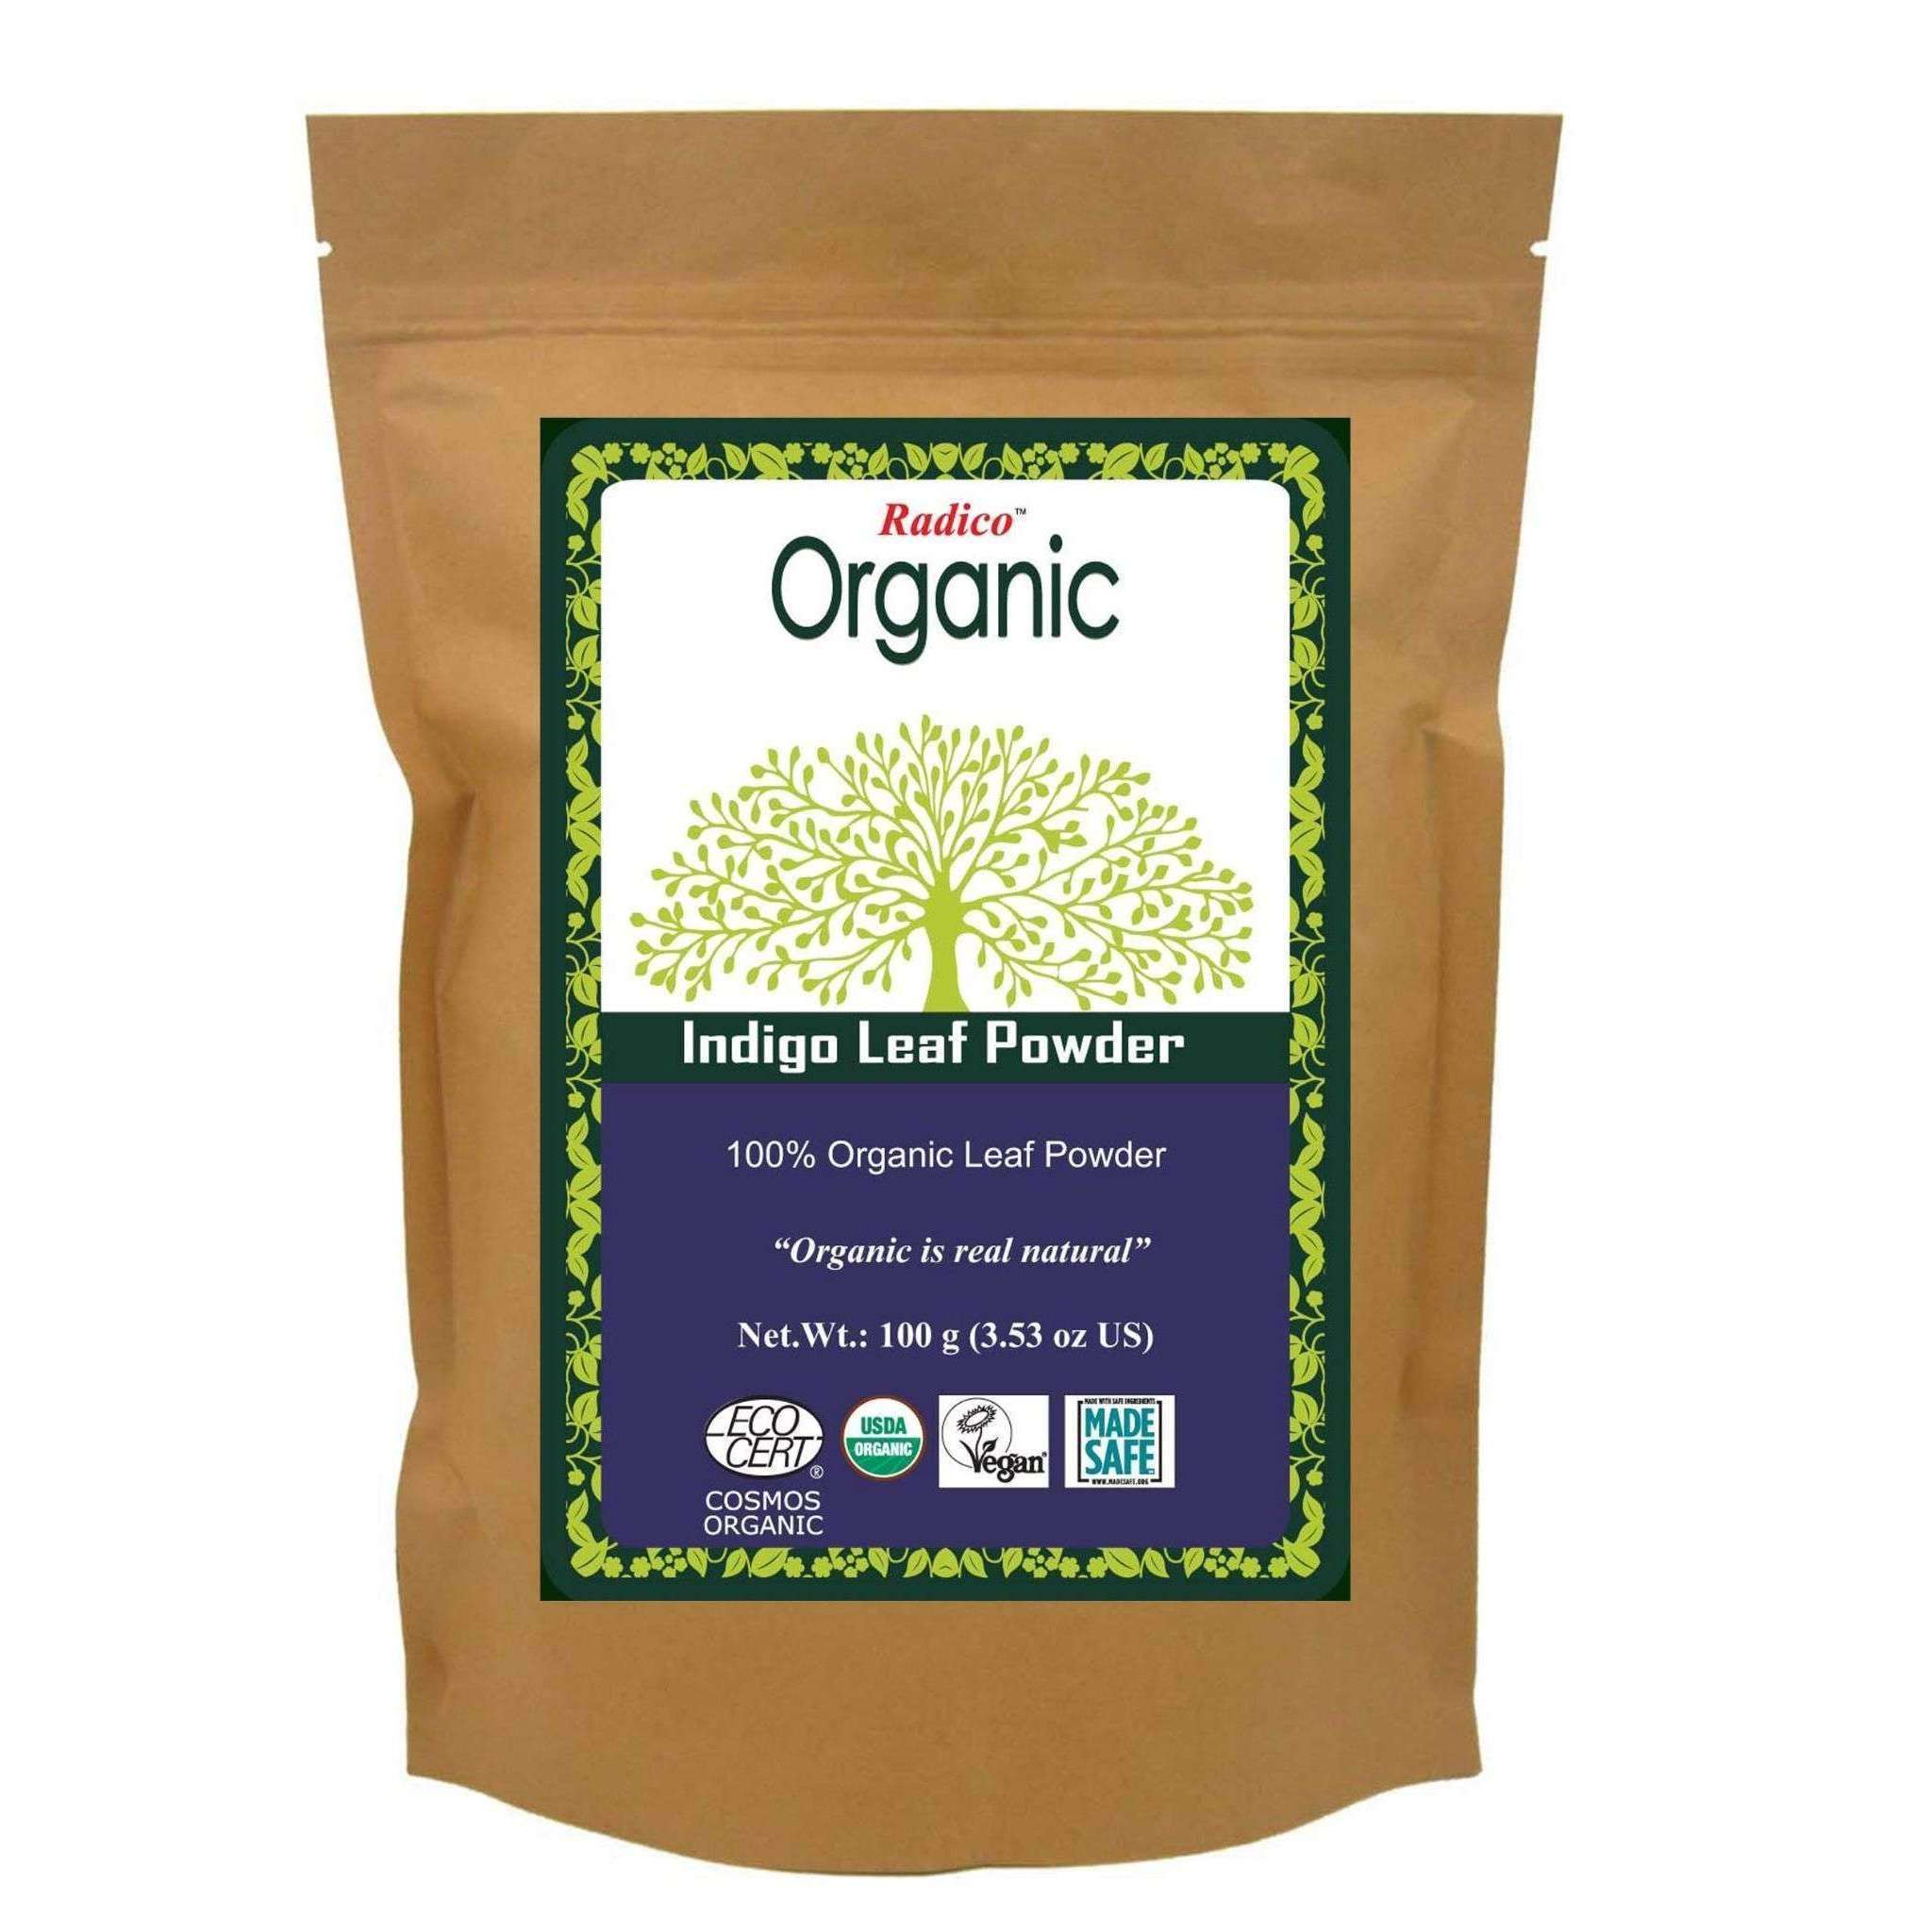 Radico Organic Indigo Leaf Powder